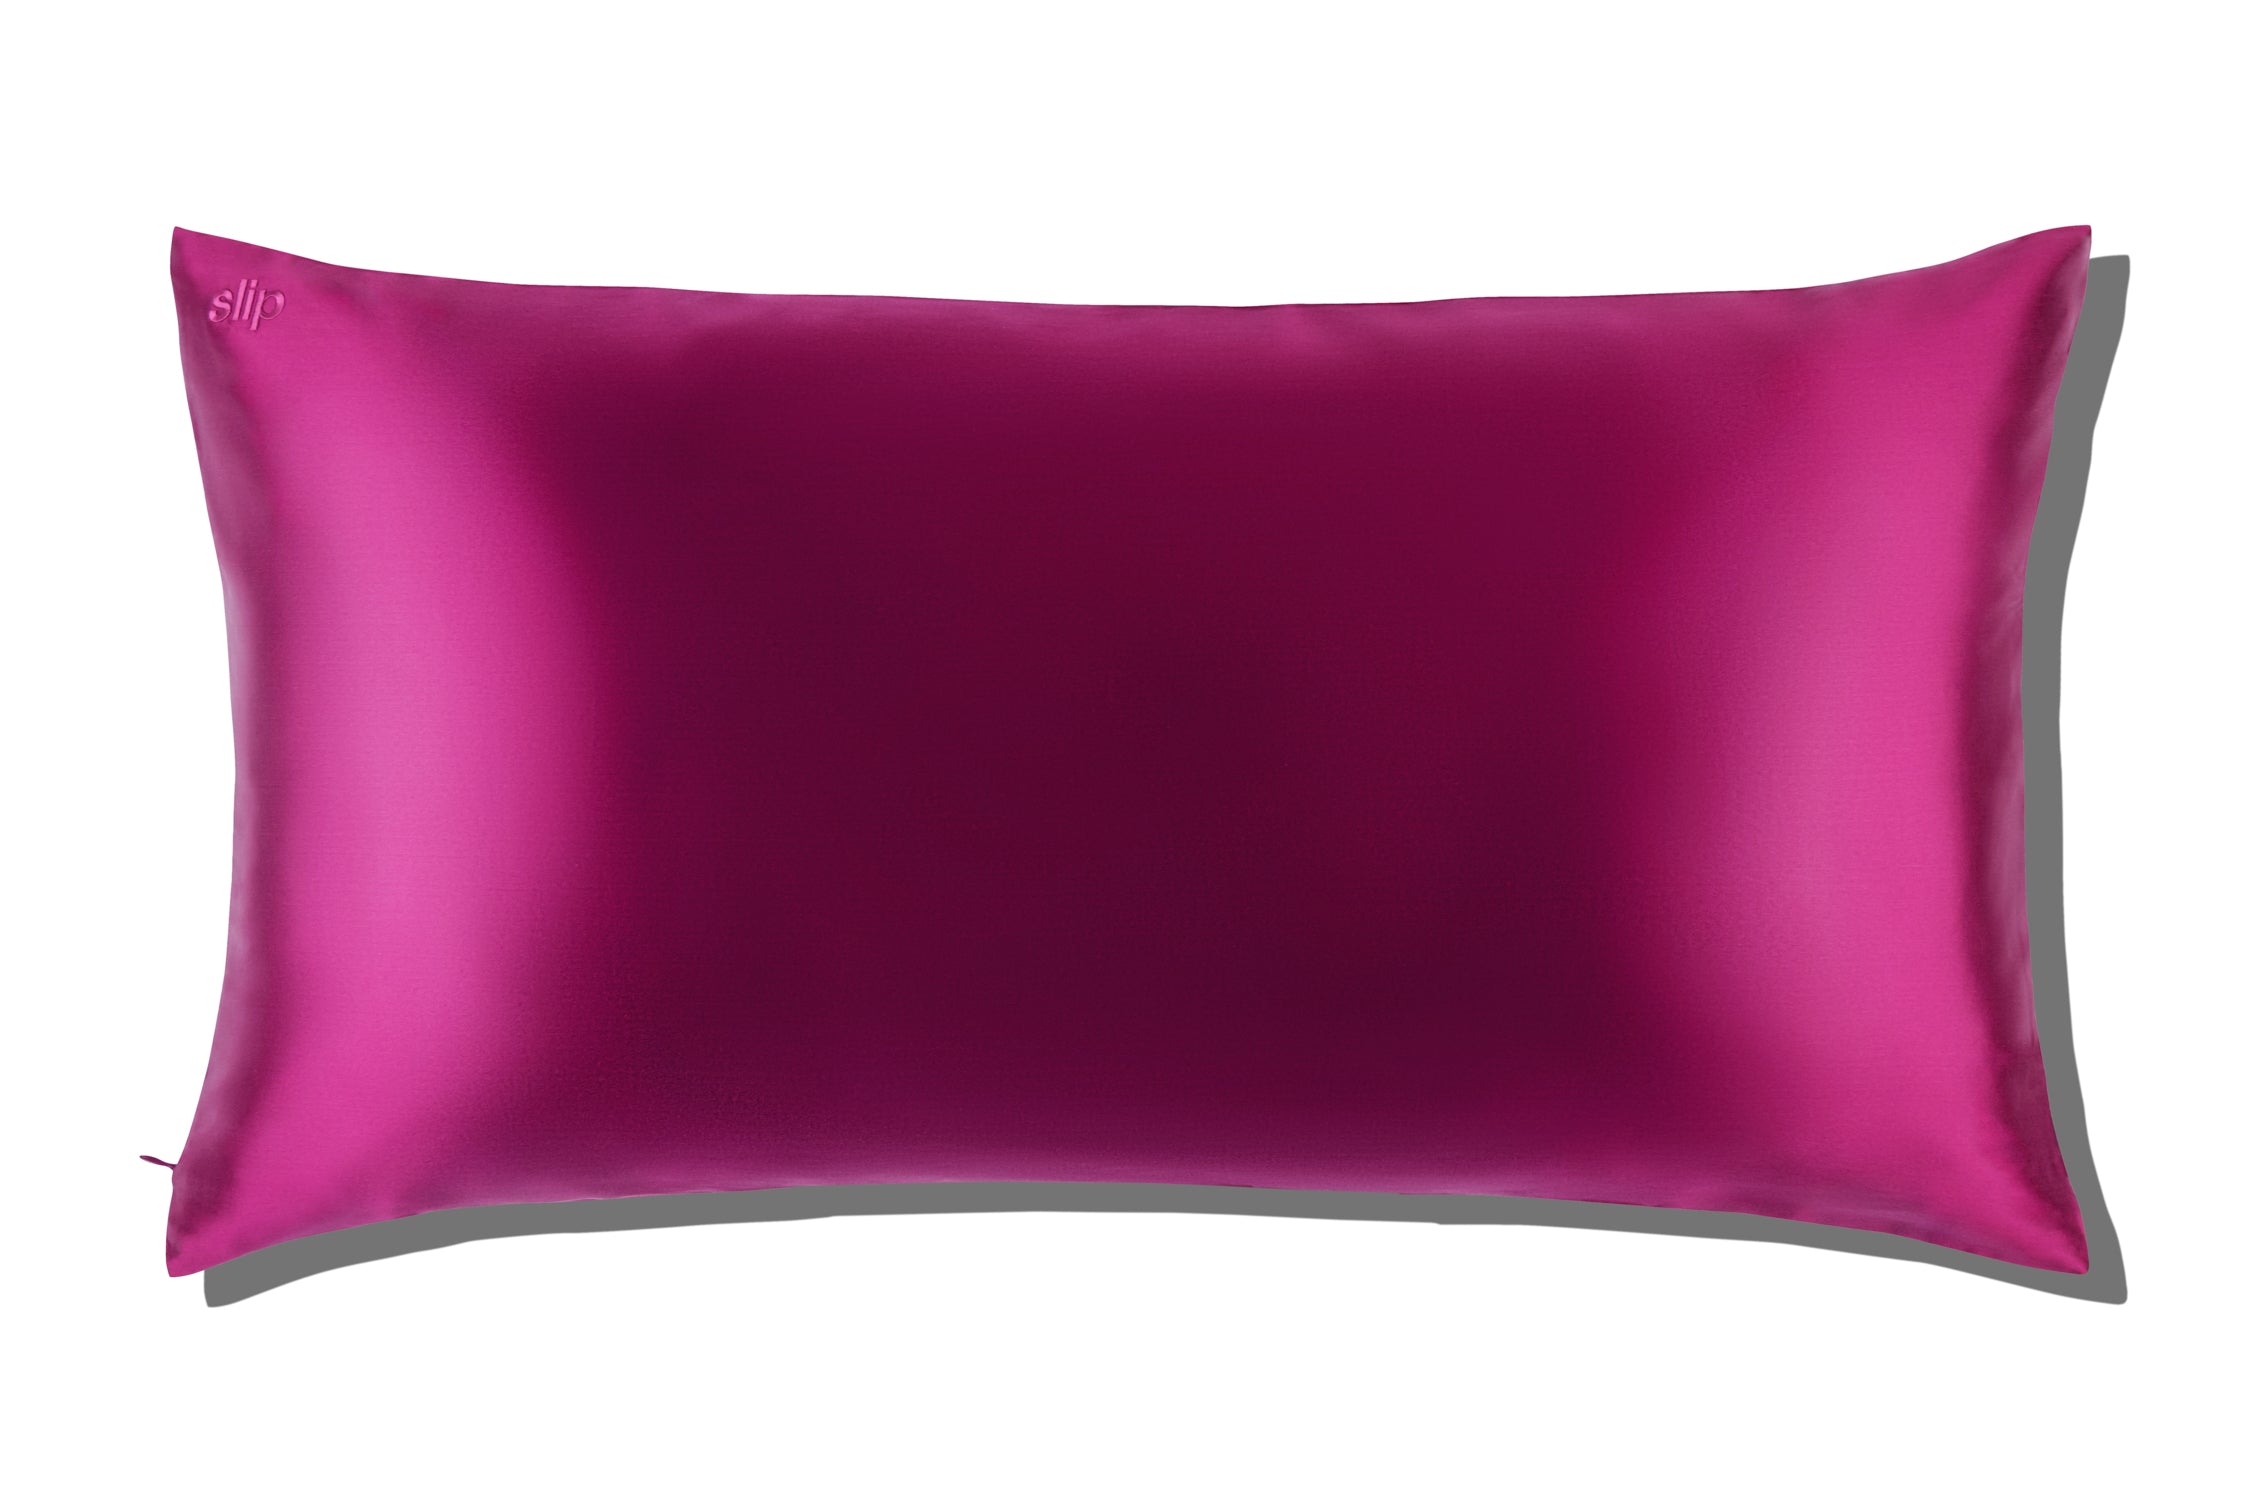 Slip® Pure Silk Pillowcase - Plum - Queen - Zippered – Slip (UK)